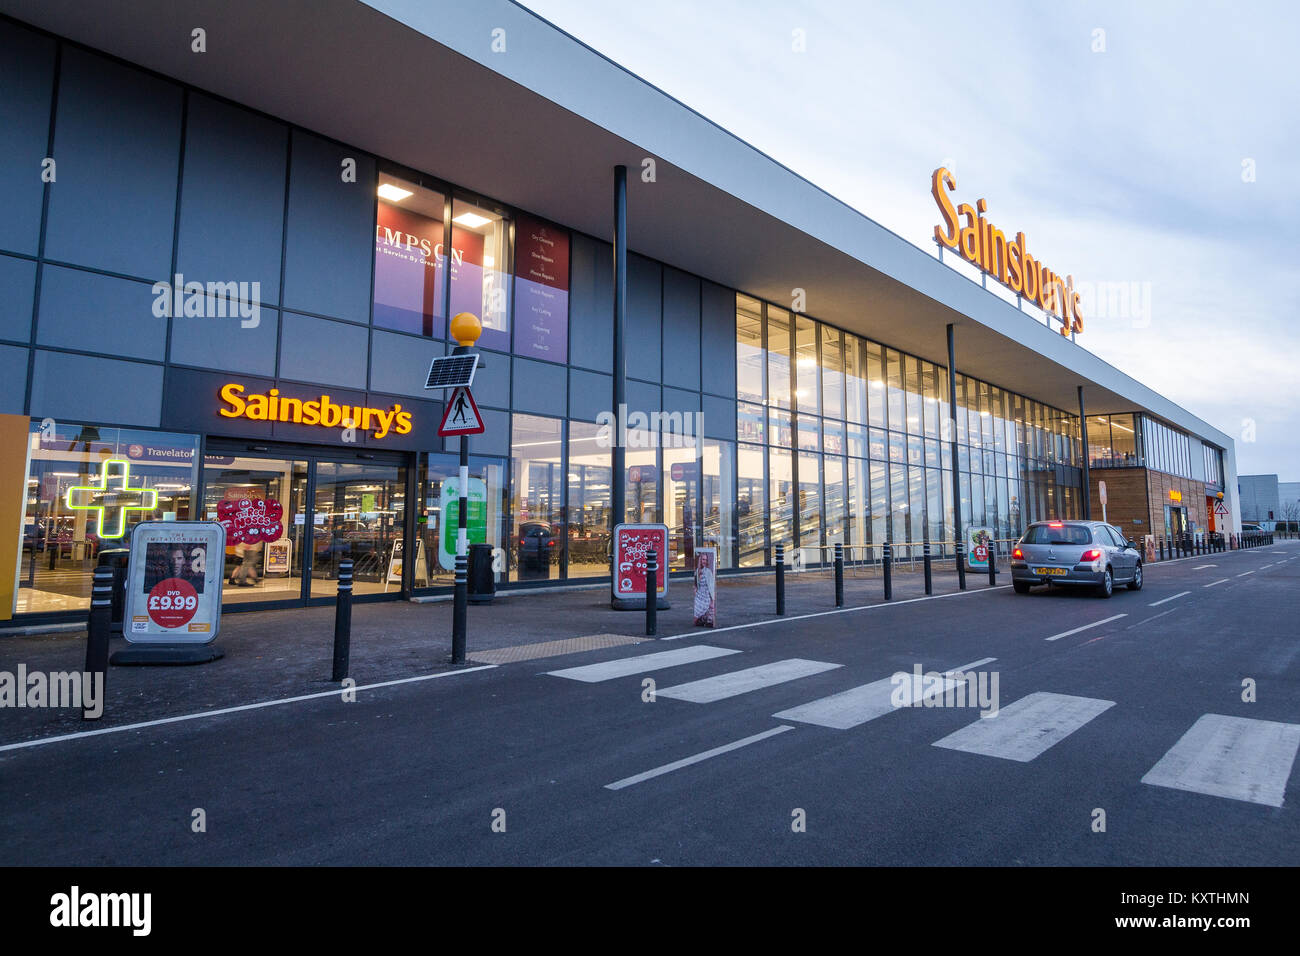 Nouveau Sainsbury's superstore, Thanet Kent, UK Banque D'Images